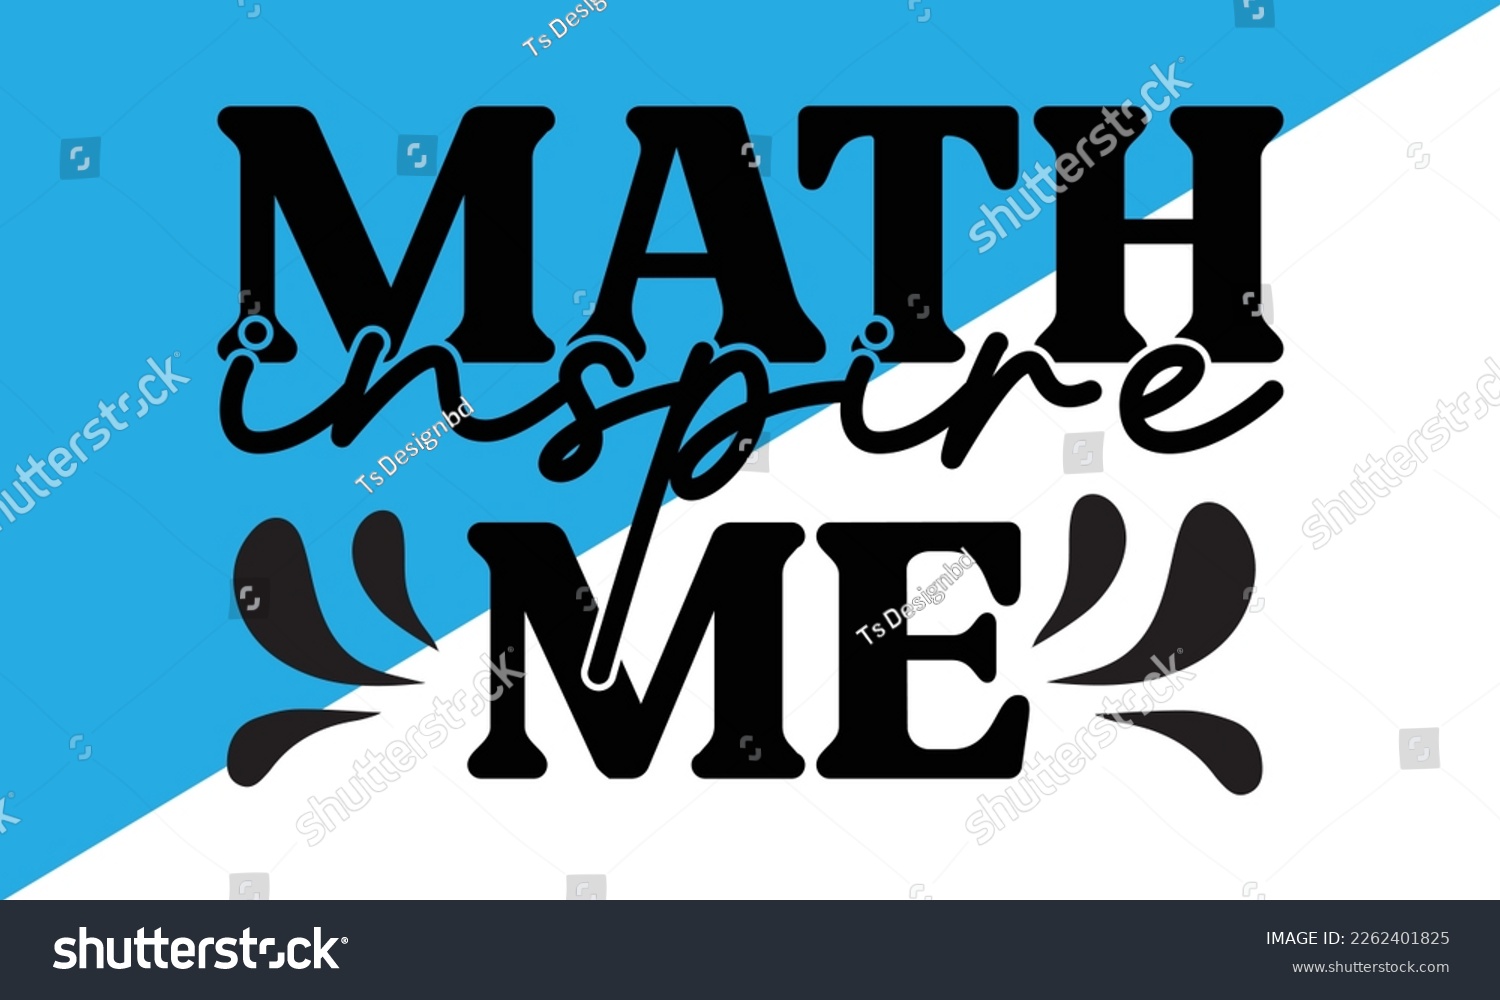 SVG of Pi Day svg Design,Pi Day 2023 svg, Math Teachers svg, ,Typography design for Pi day, math teacher gift, math lover, engineer tees, svg